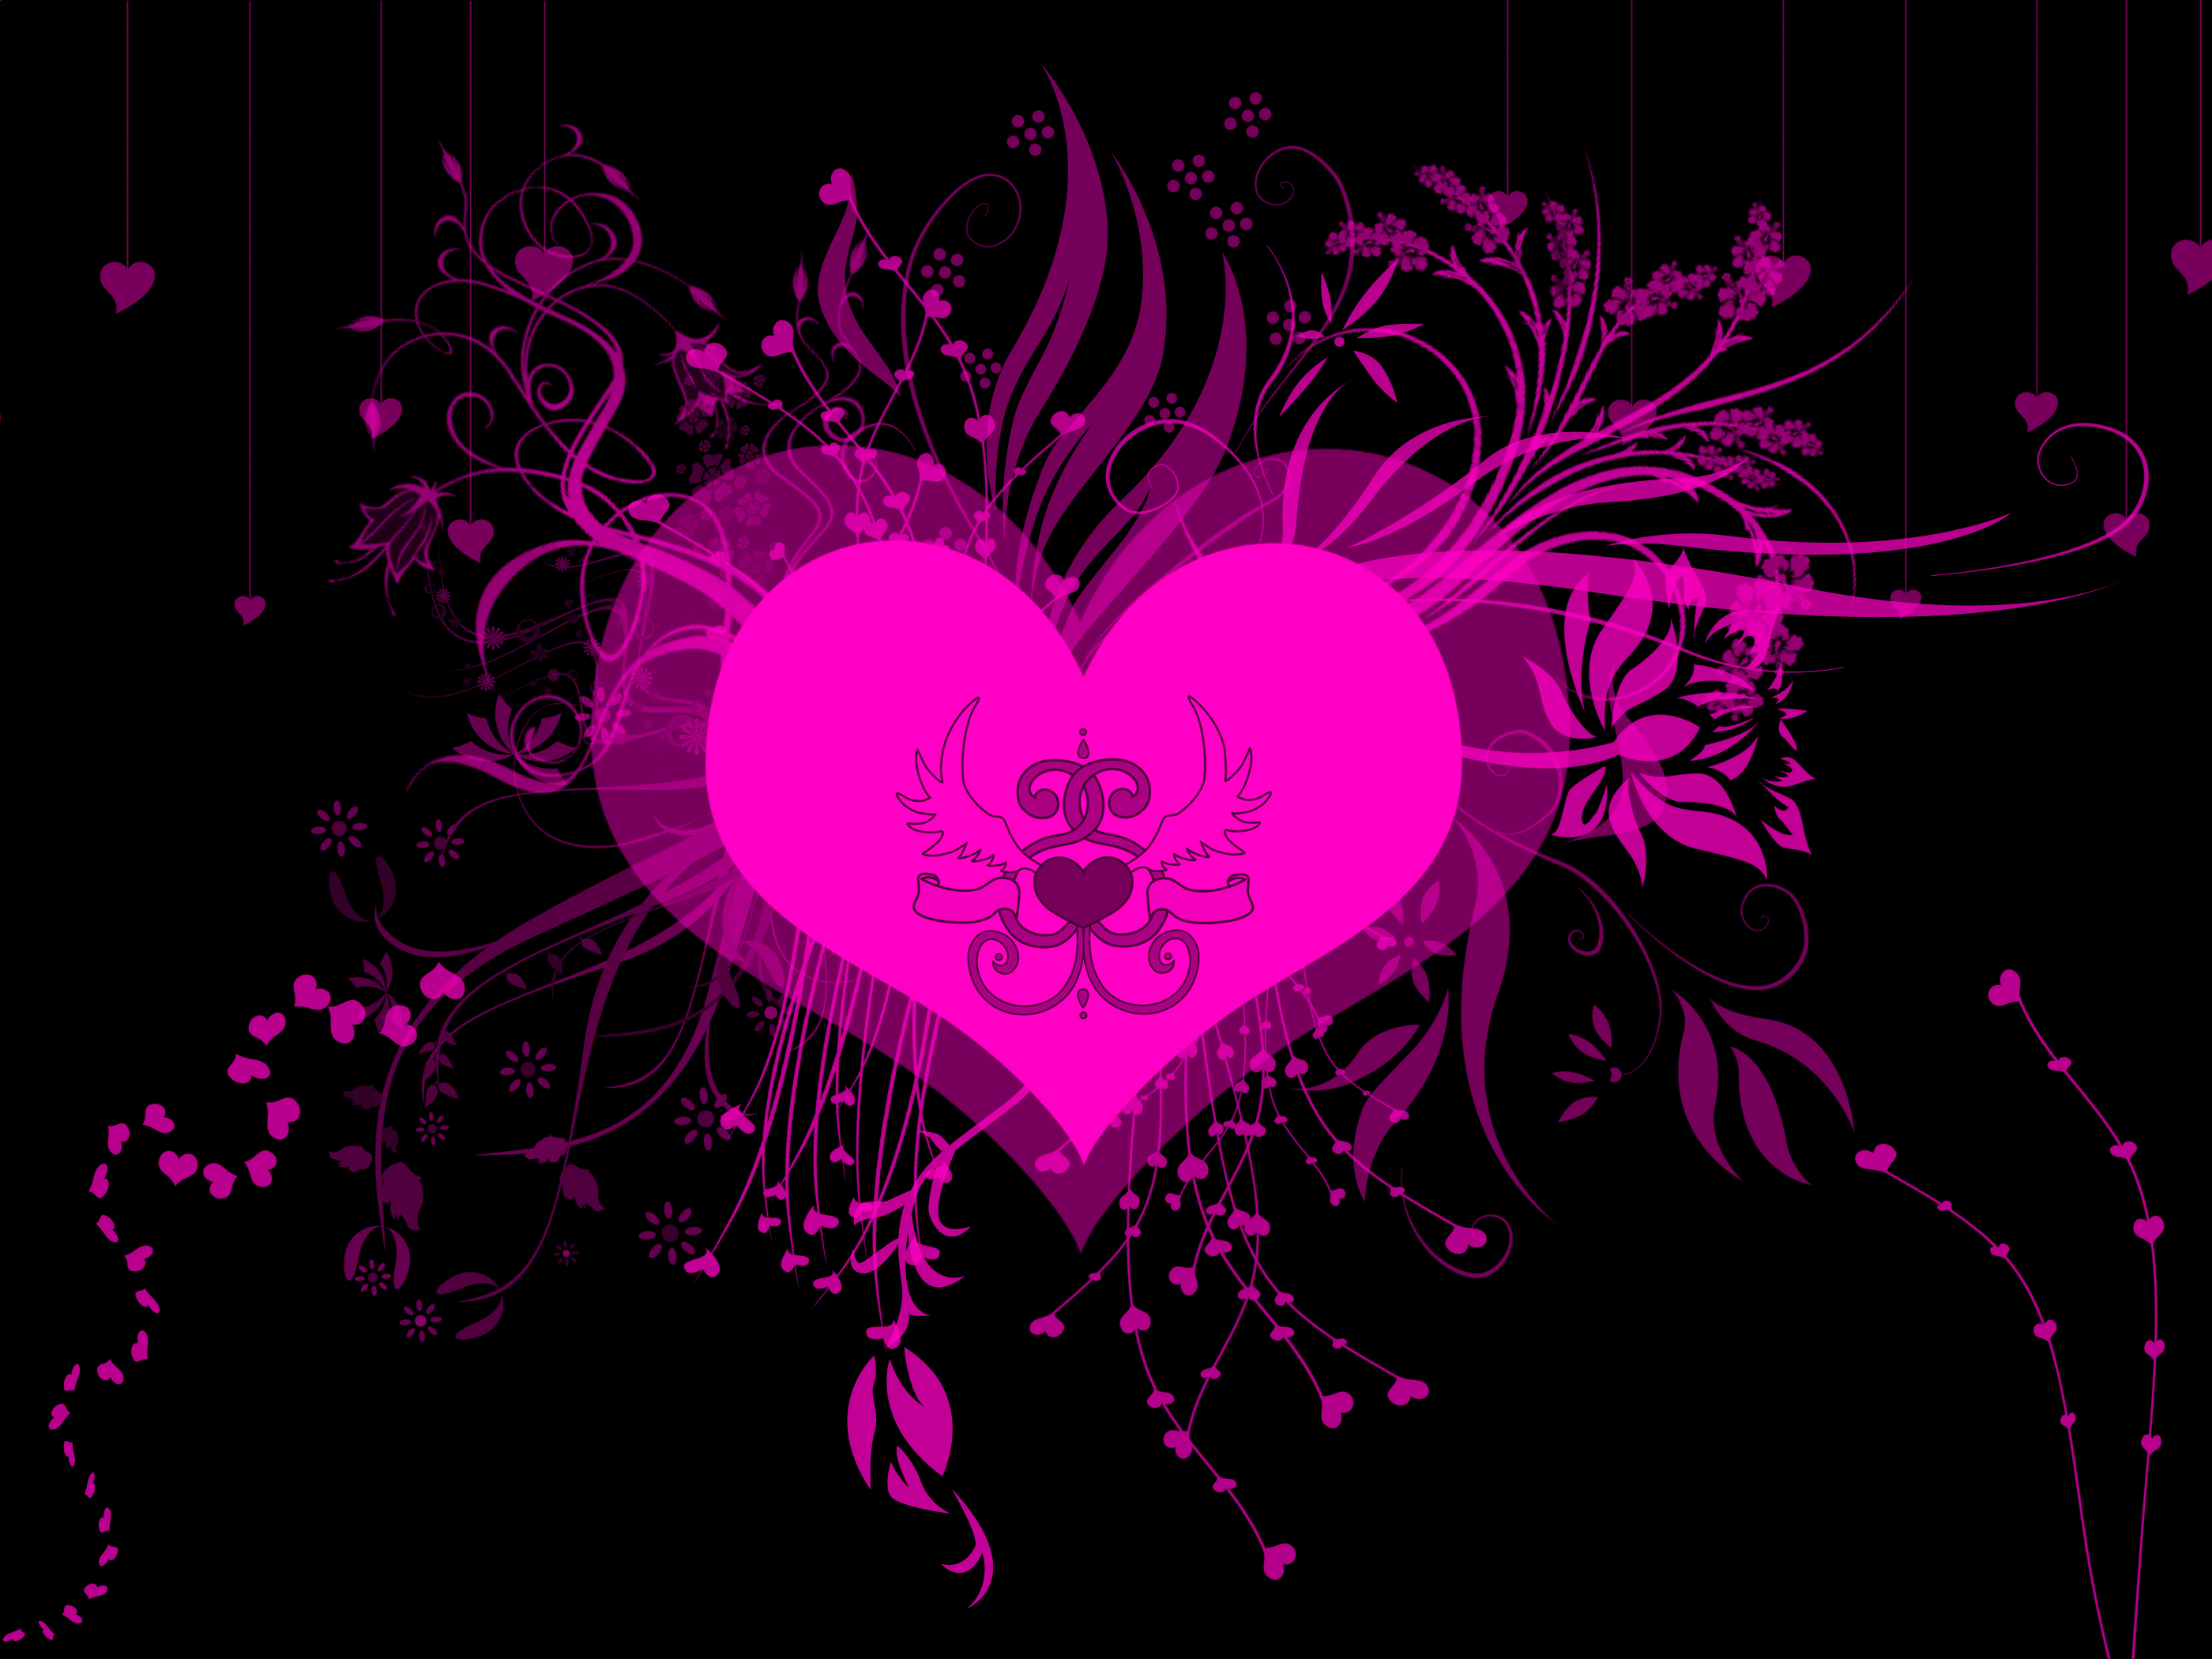 Сердце на розовом фоне